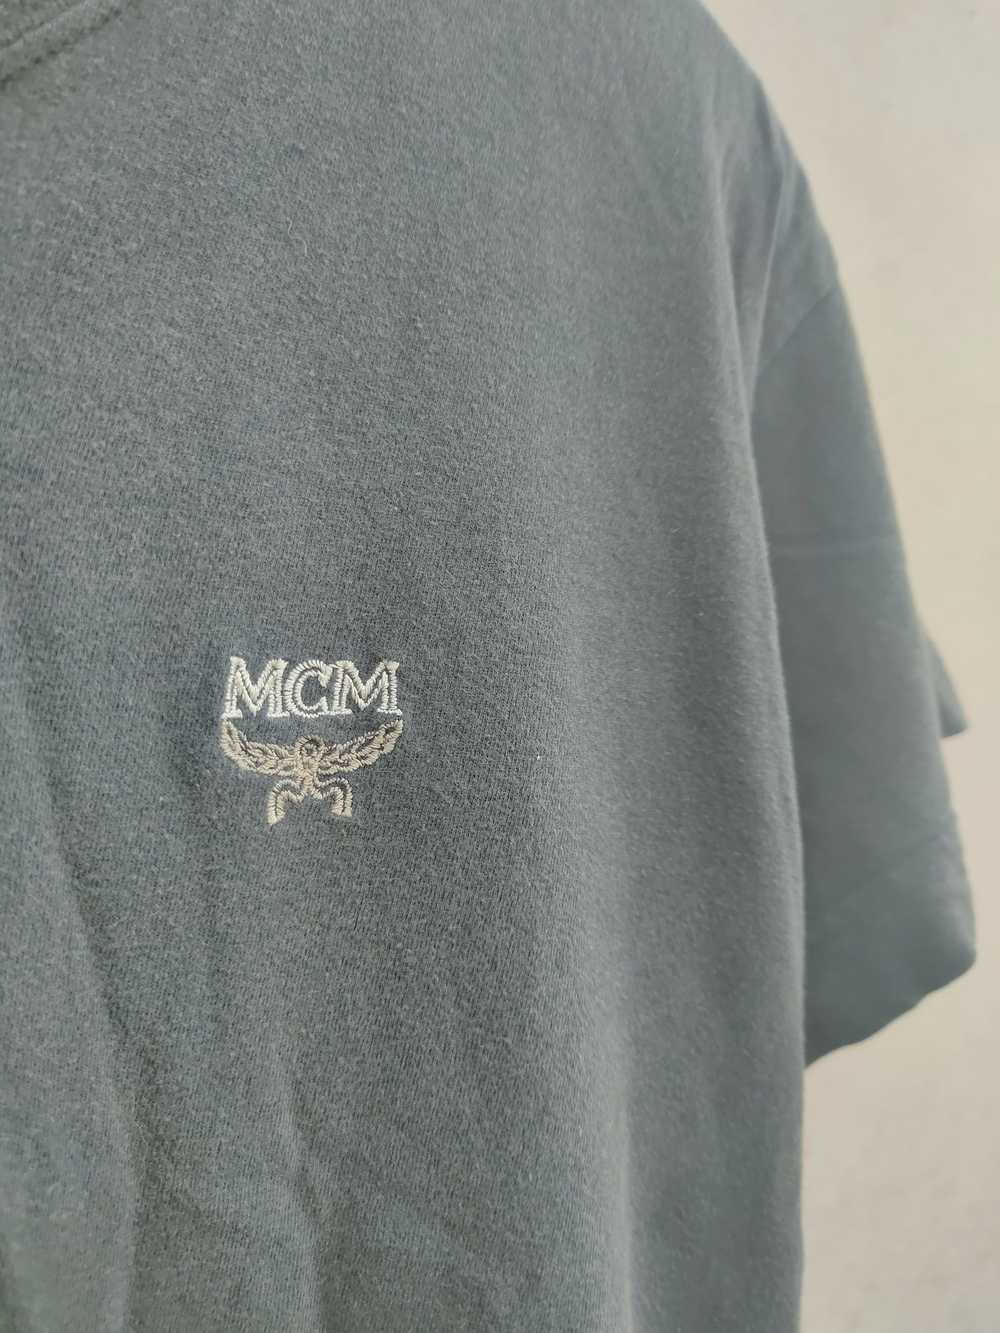 Designer × MCM × Vintage Rare MCM Légère Embroide… - image 3